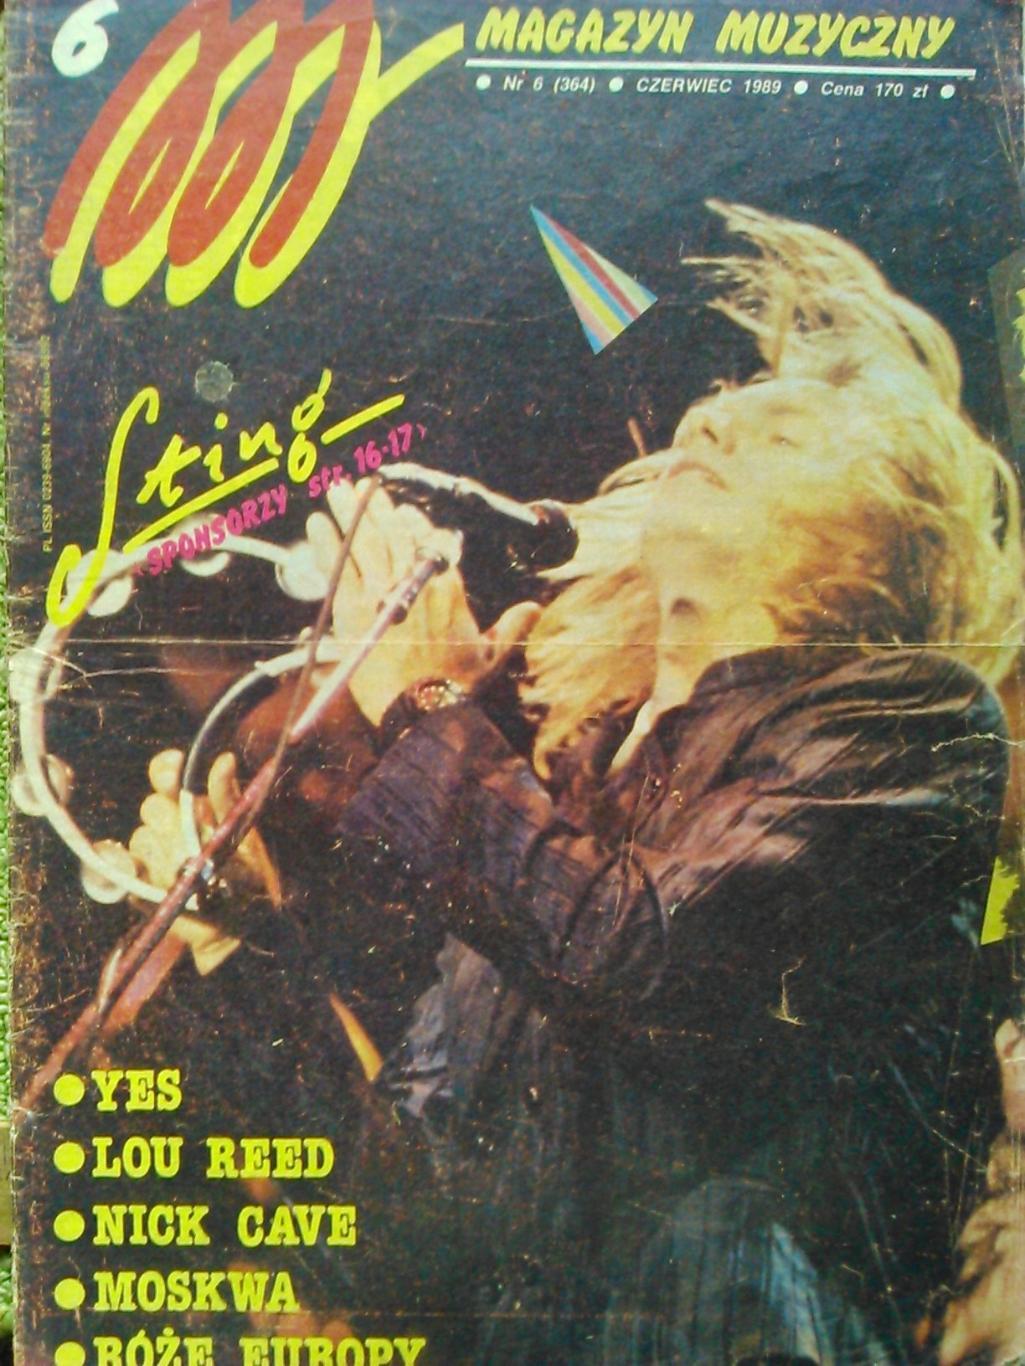 Magazyn muzyczny #6/1989/(Польща). Музикальный журнал. Гуртом знижки до 50%!